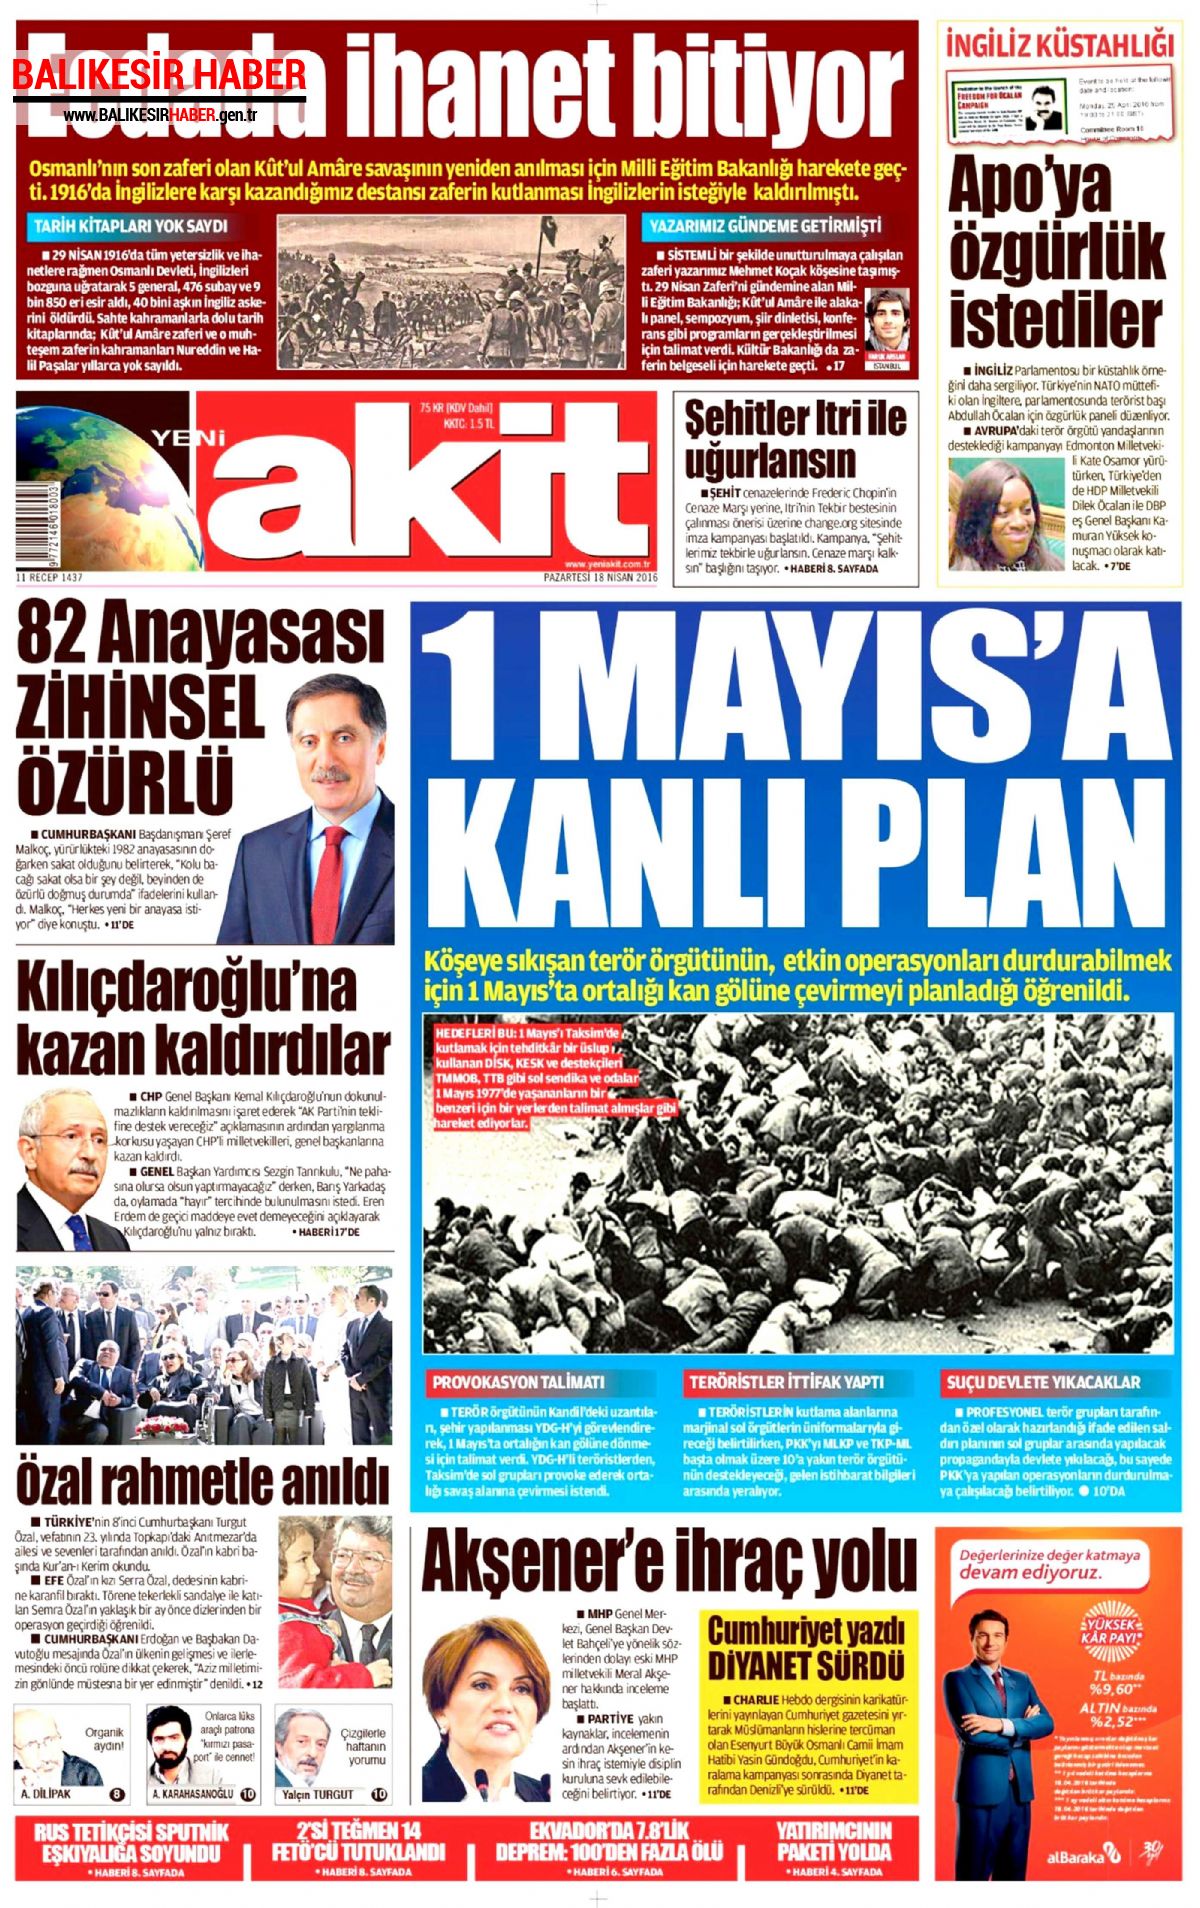 Yeni Akit Gazetesi 18 Nisan 2016 Gazete Manşetleri